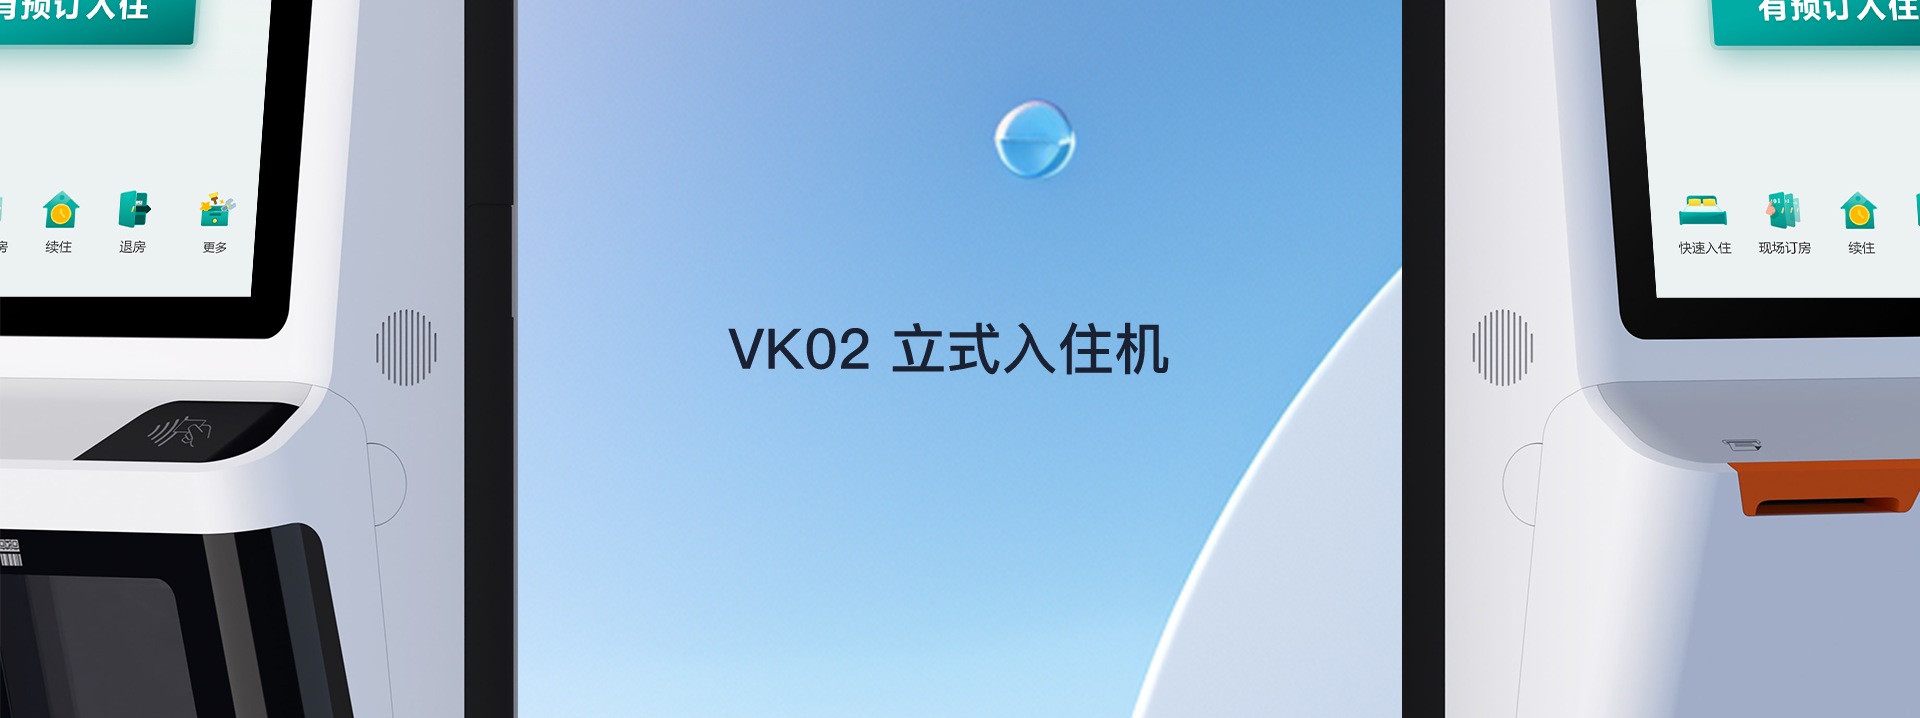 VK02立式入住机